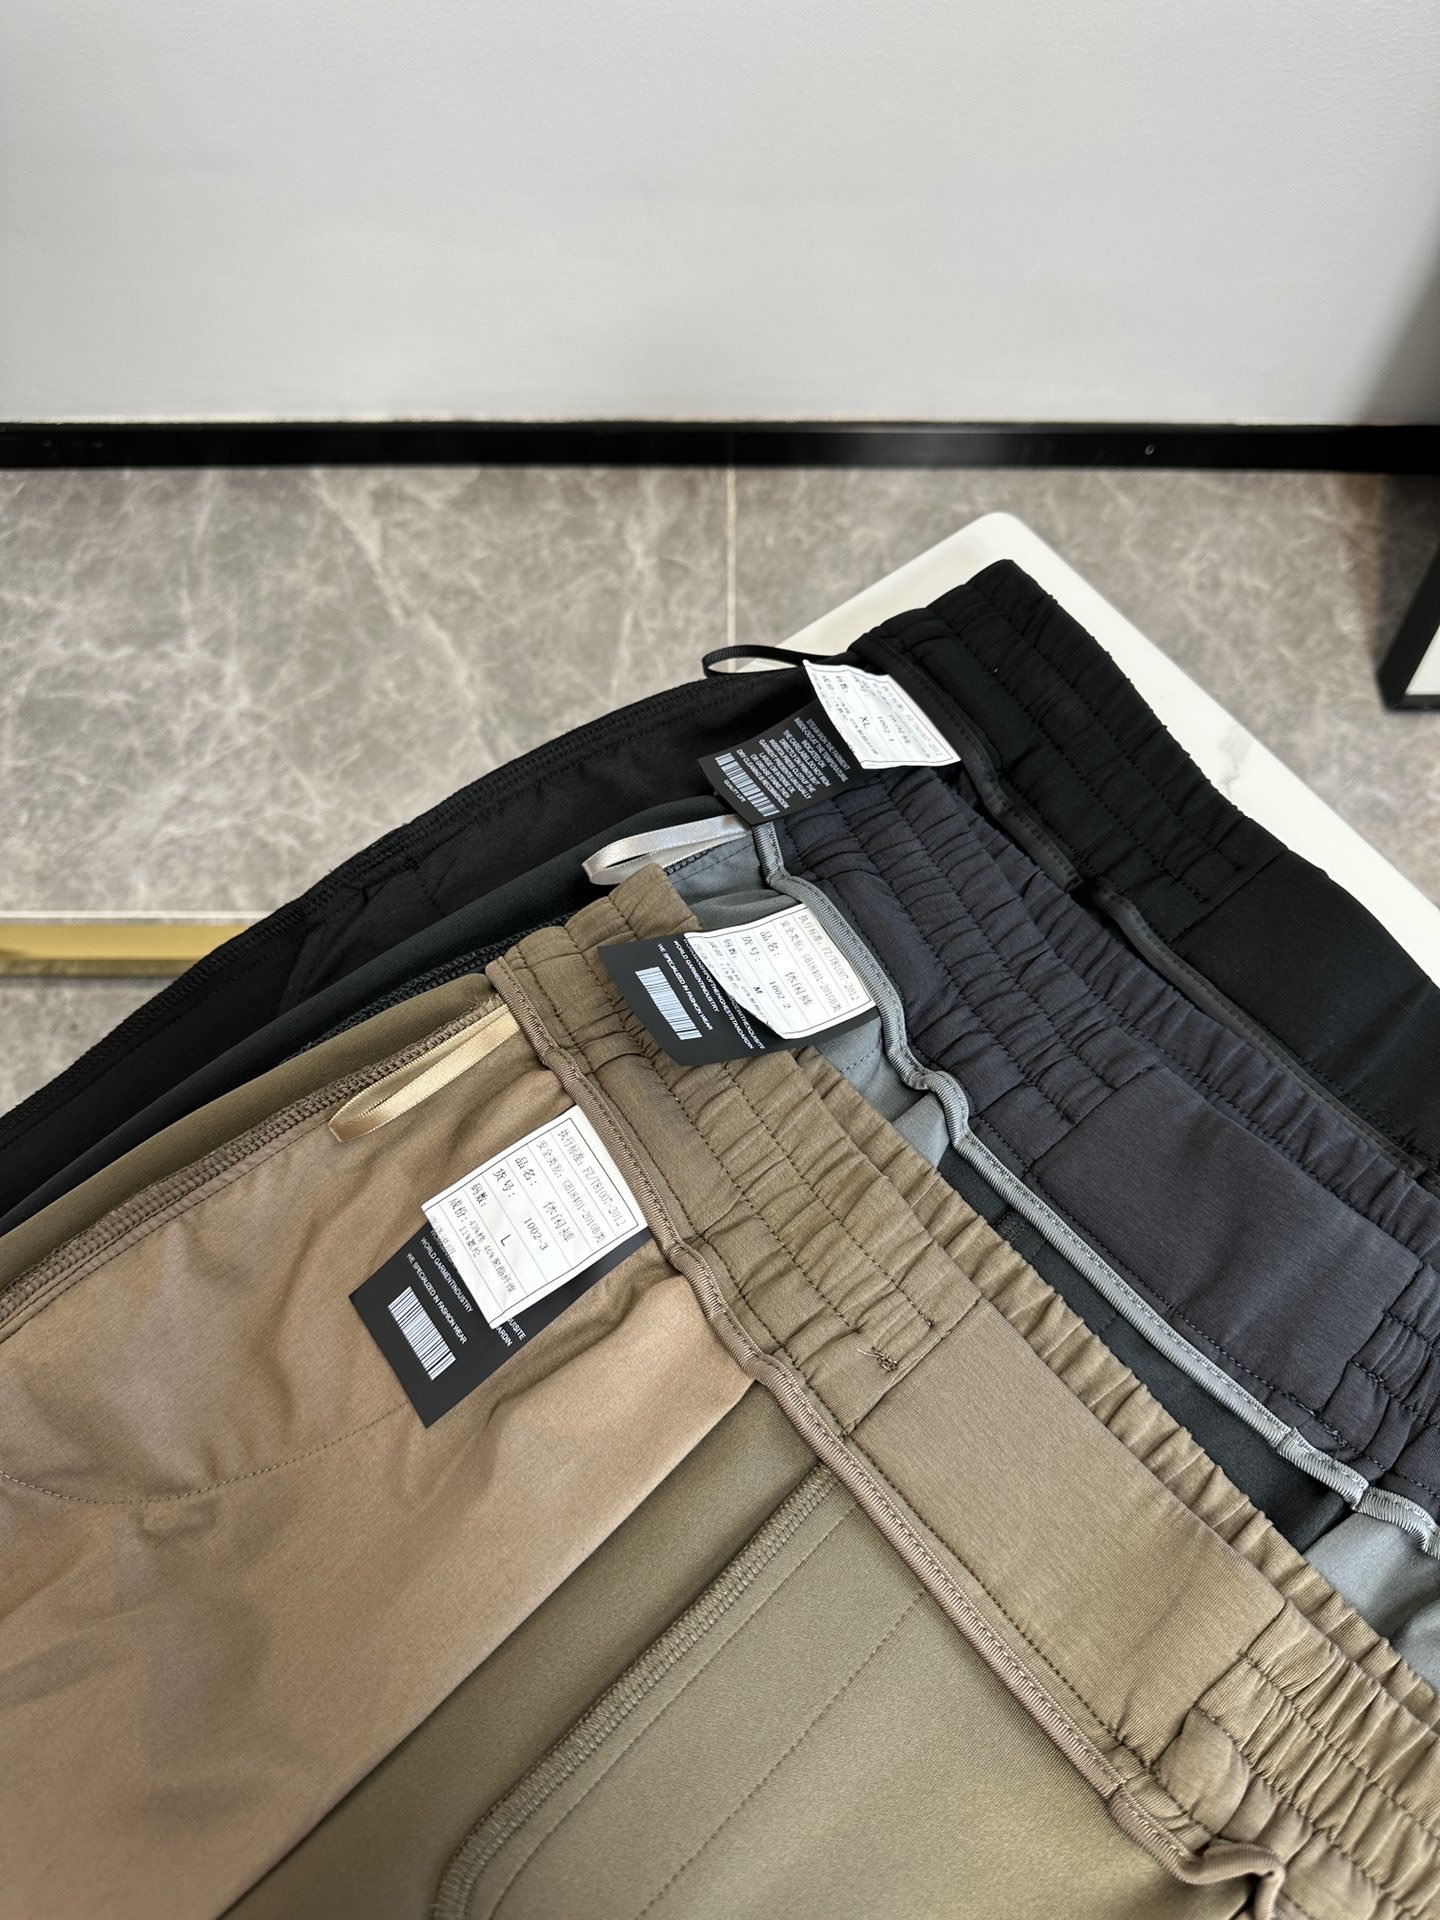 欧货L罗家-234ss春夏新款进口纯棉质地复合面料再见基础款帅气卫裤.....一线时尚品牌出色独到的设计